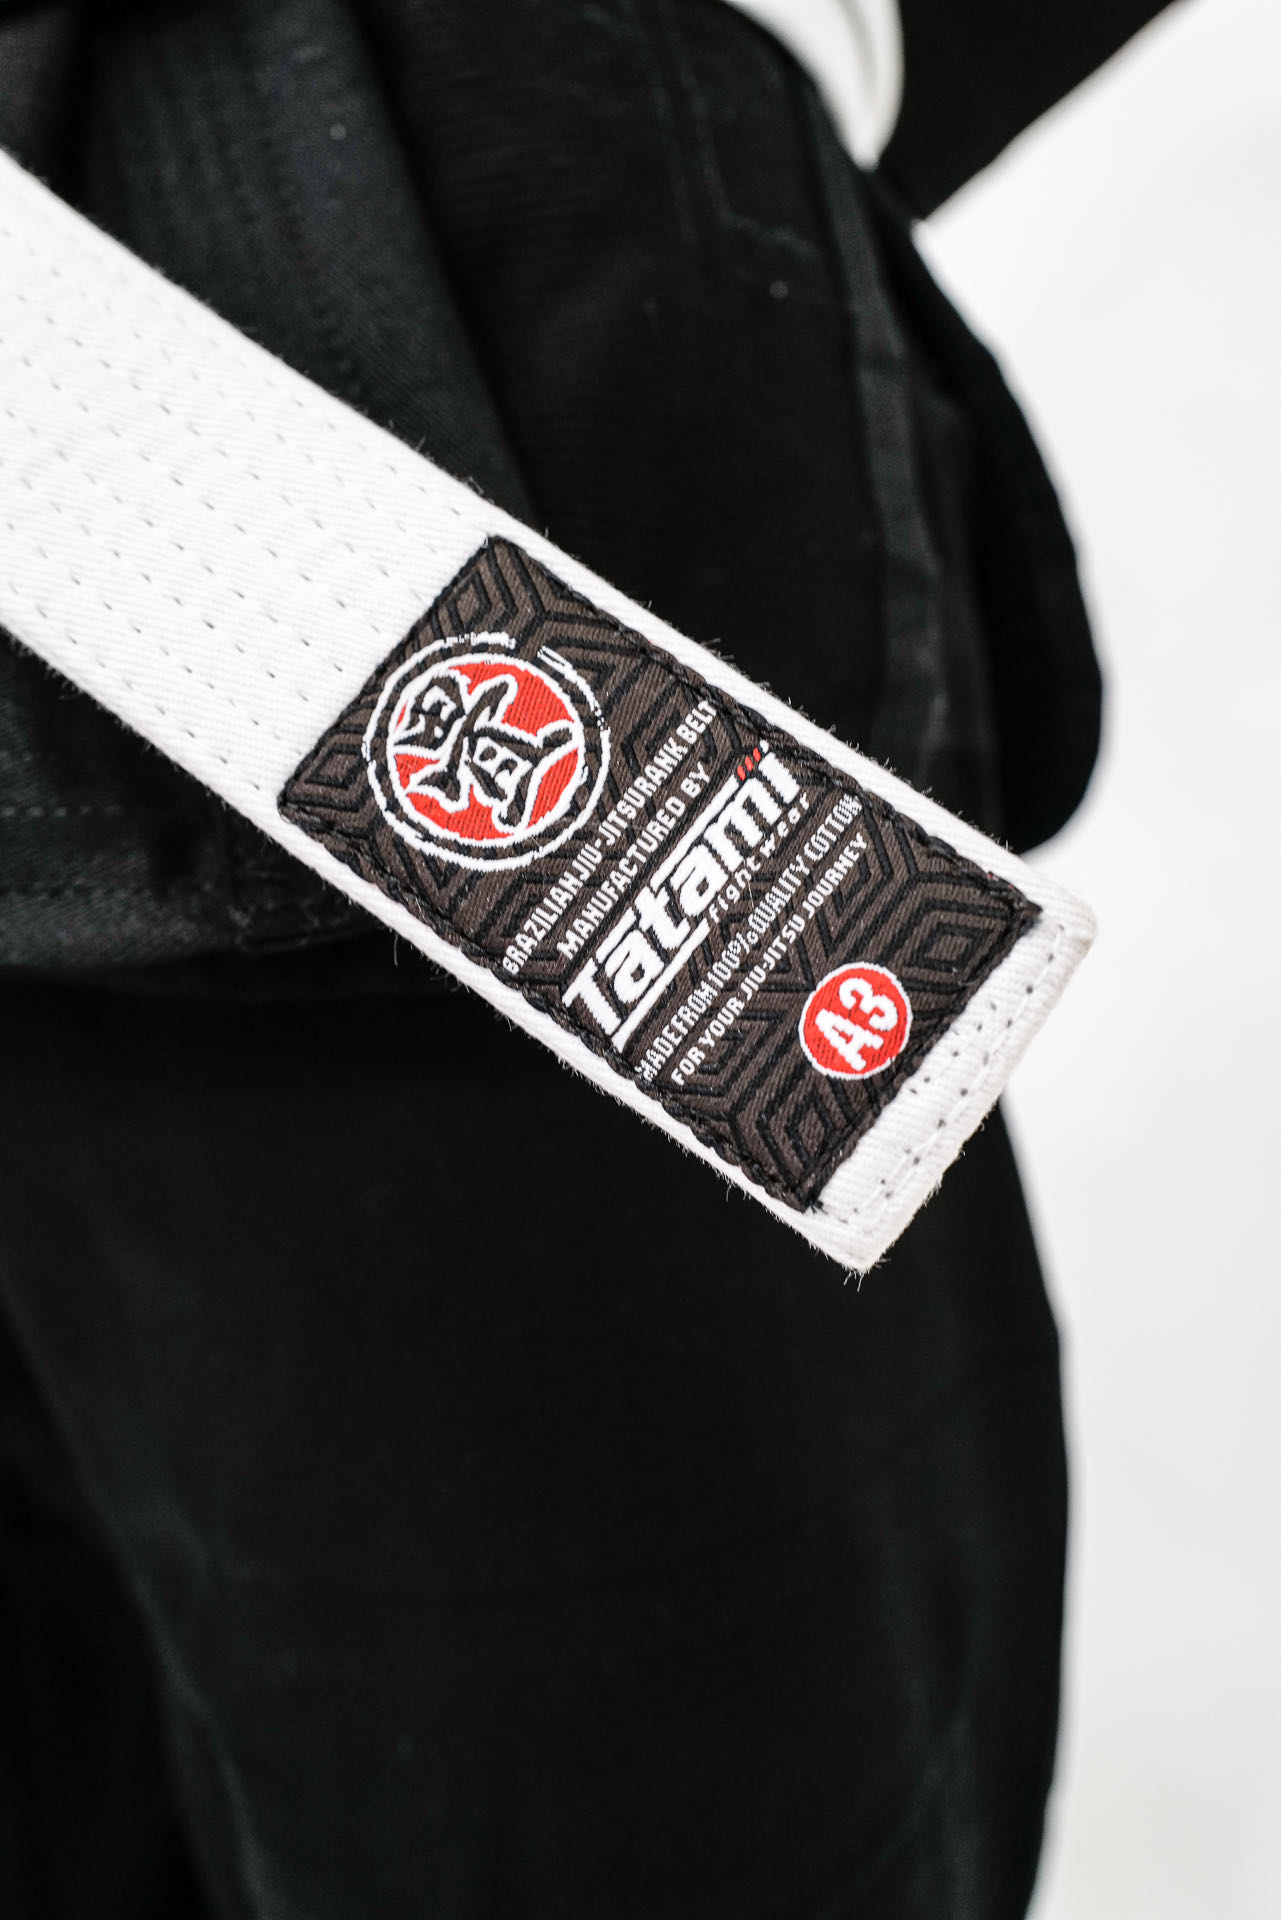 guertel tatami belt fengbao white a3 v2 gi